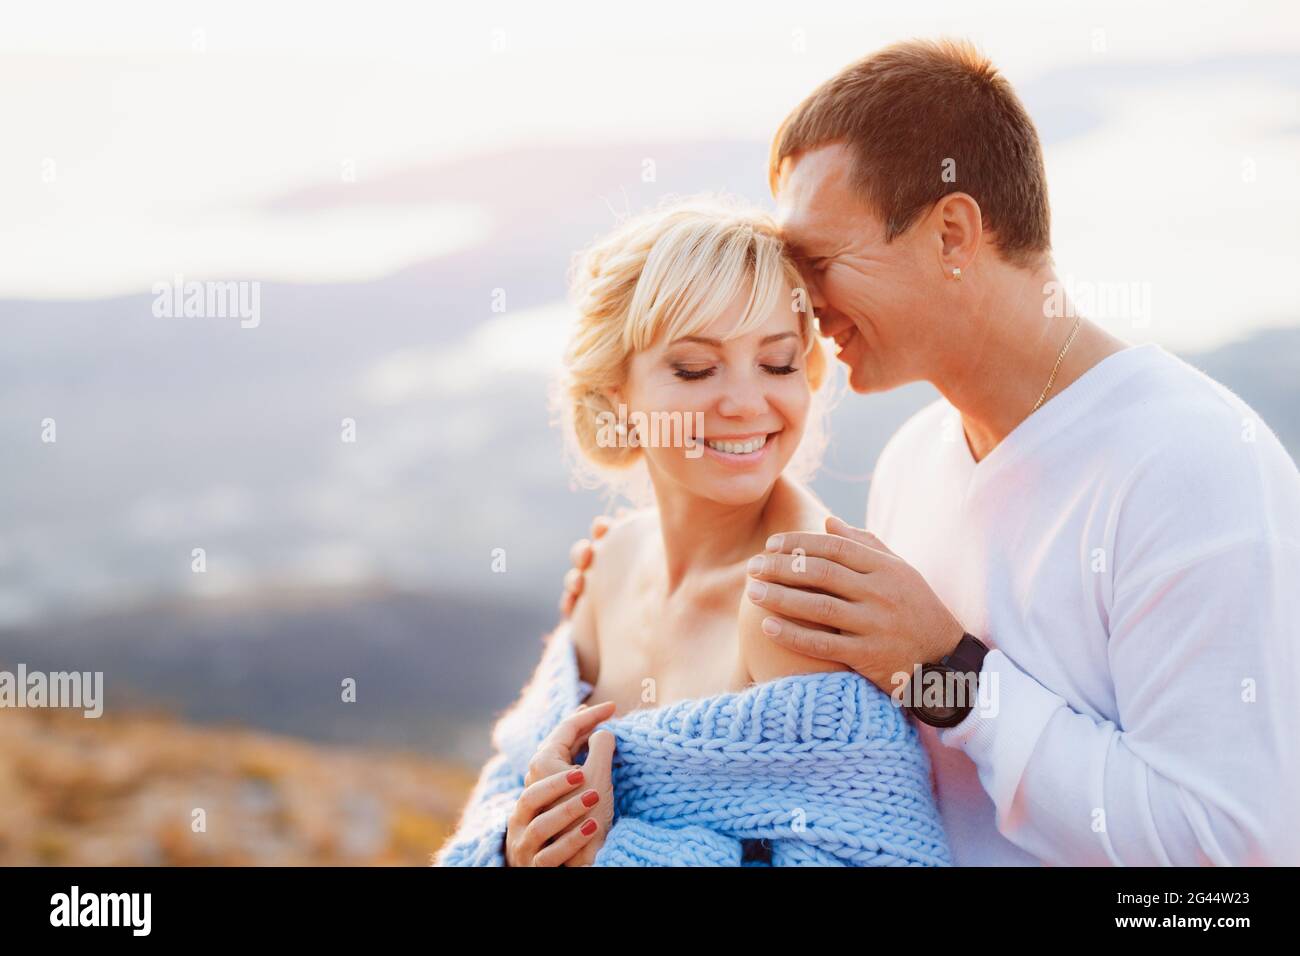 Lächelnder Mann umarmt lächelnde Frau in einem blauen Pullover an den Schultern auf dem Hintergrund der Berge. Nahaufnahme Stockfoto